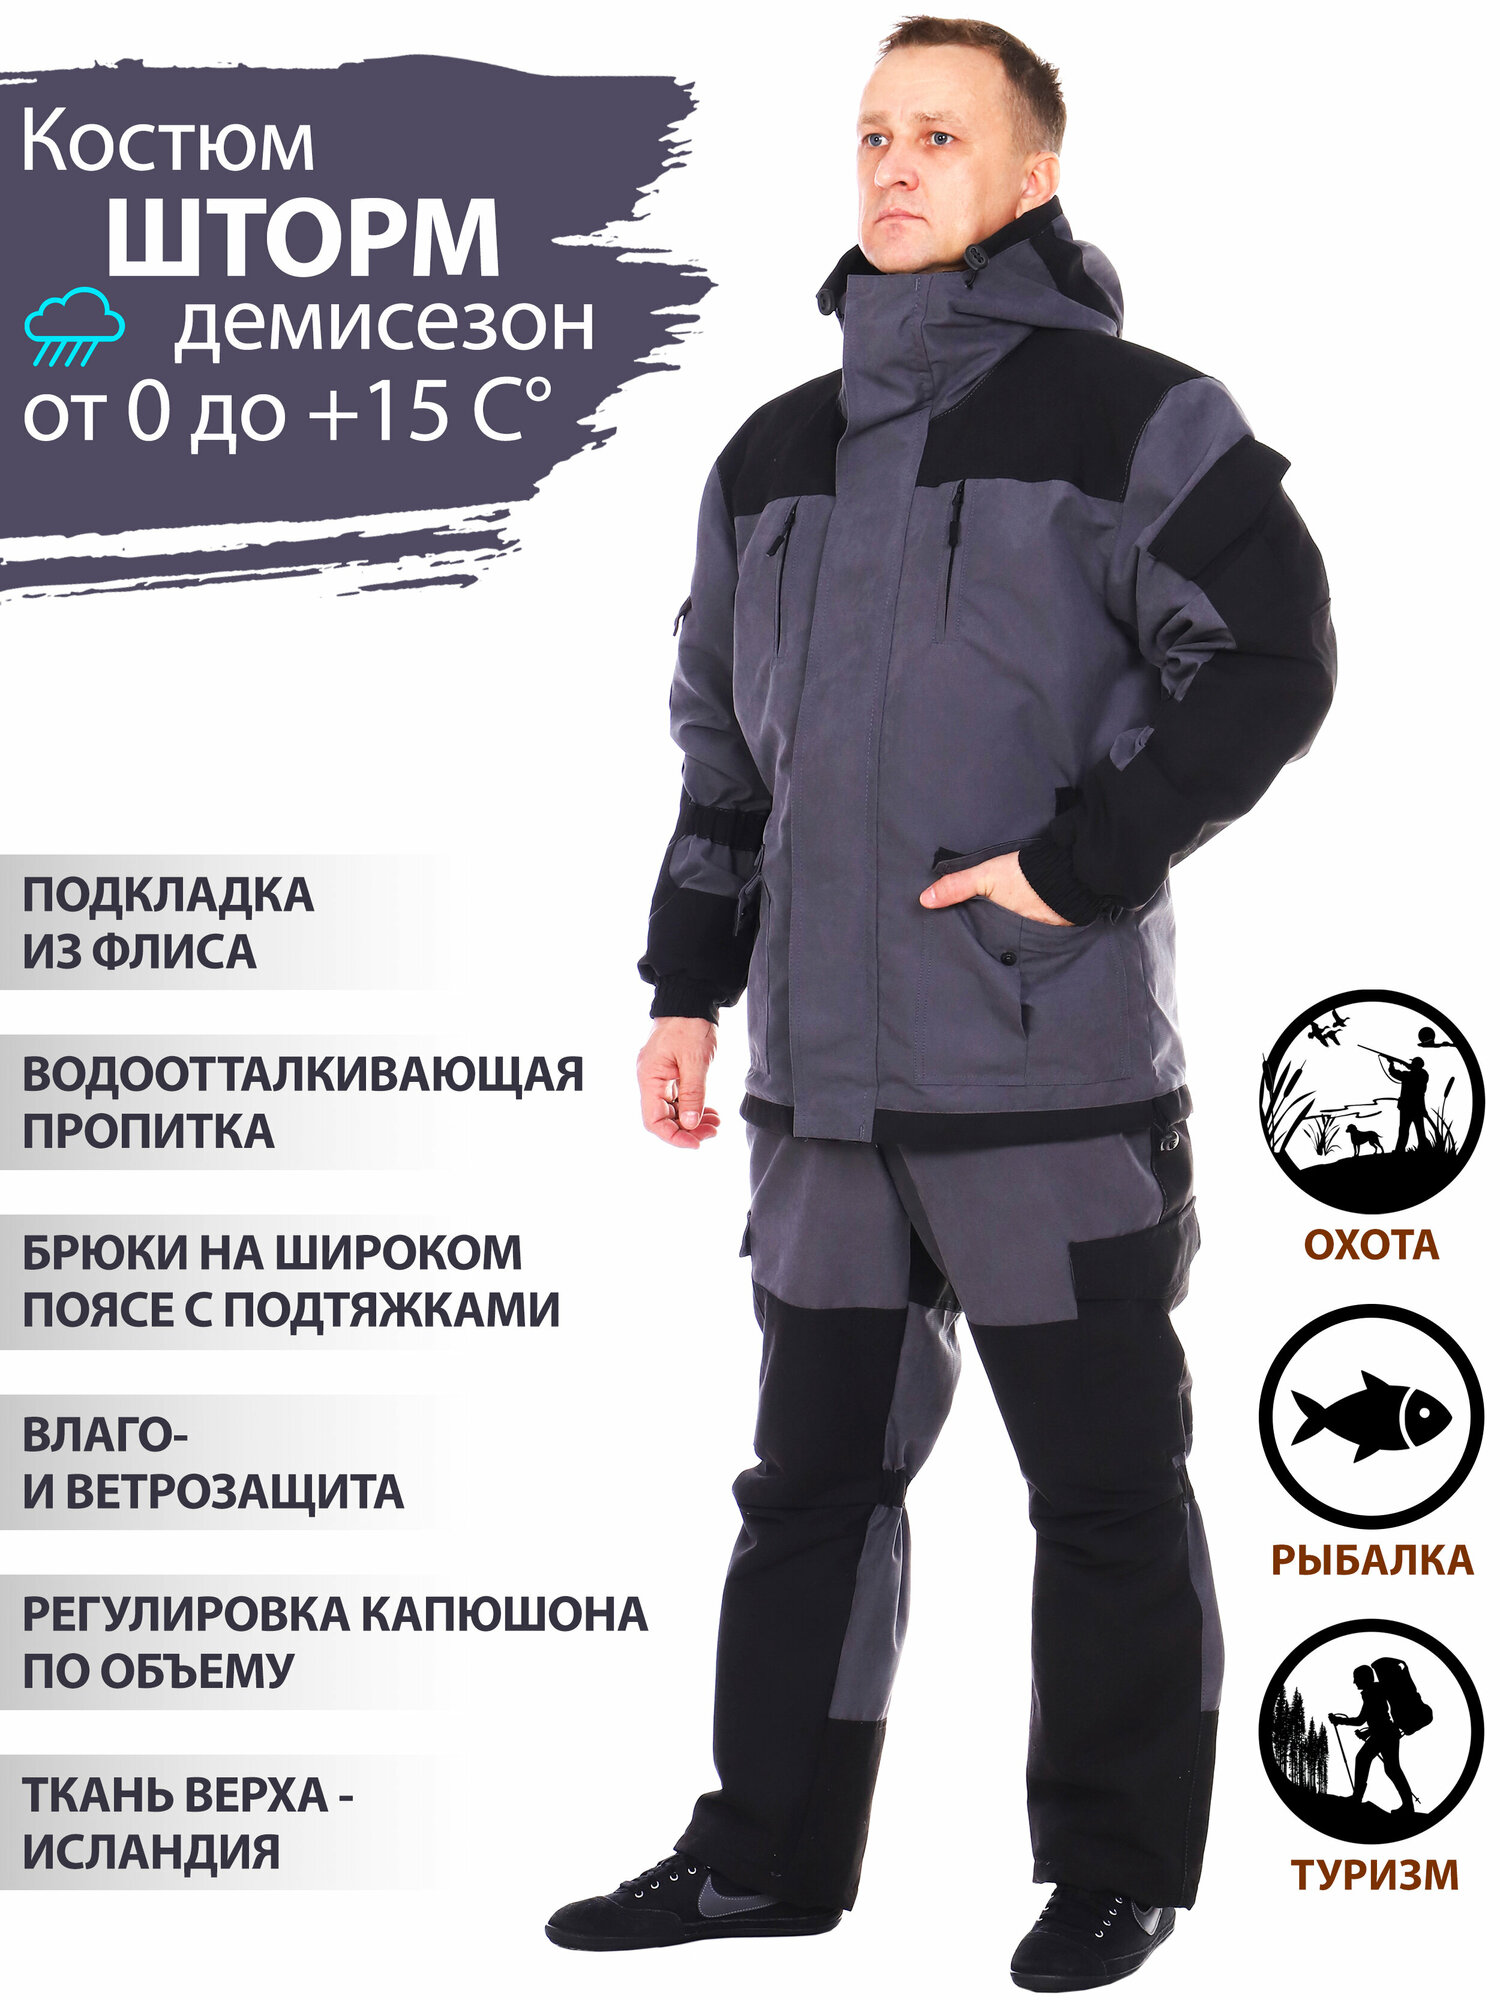 Восток-текс / костюм Горка рыболовный исландия для активного отдыха, охота, рыбалка, туризм